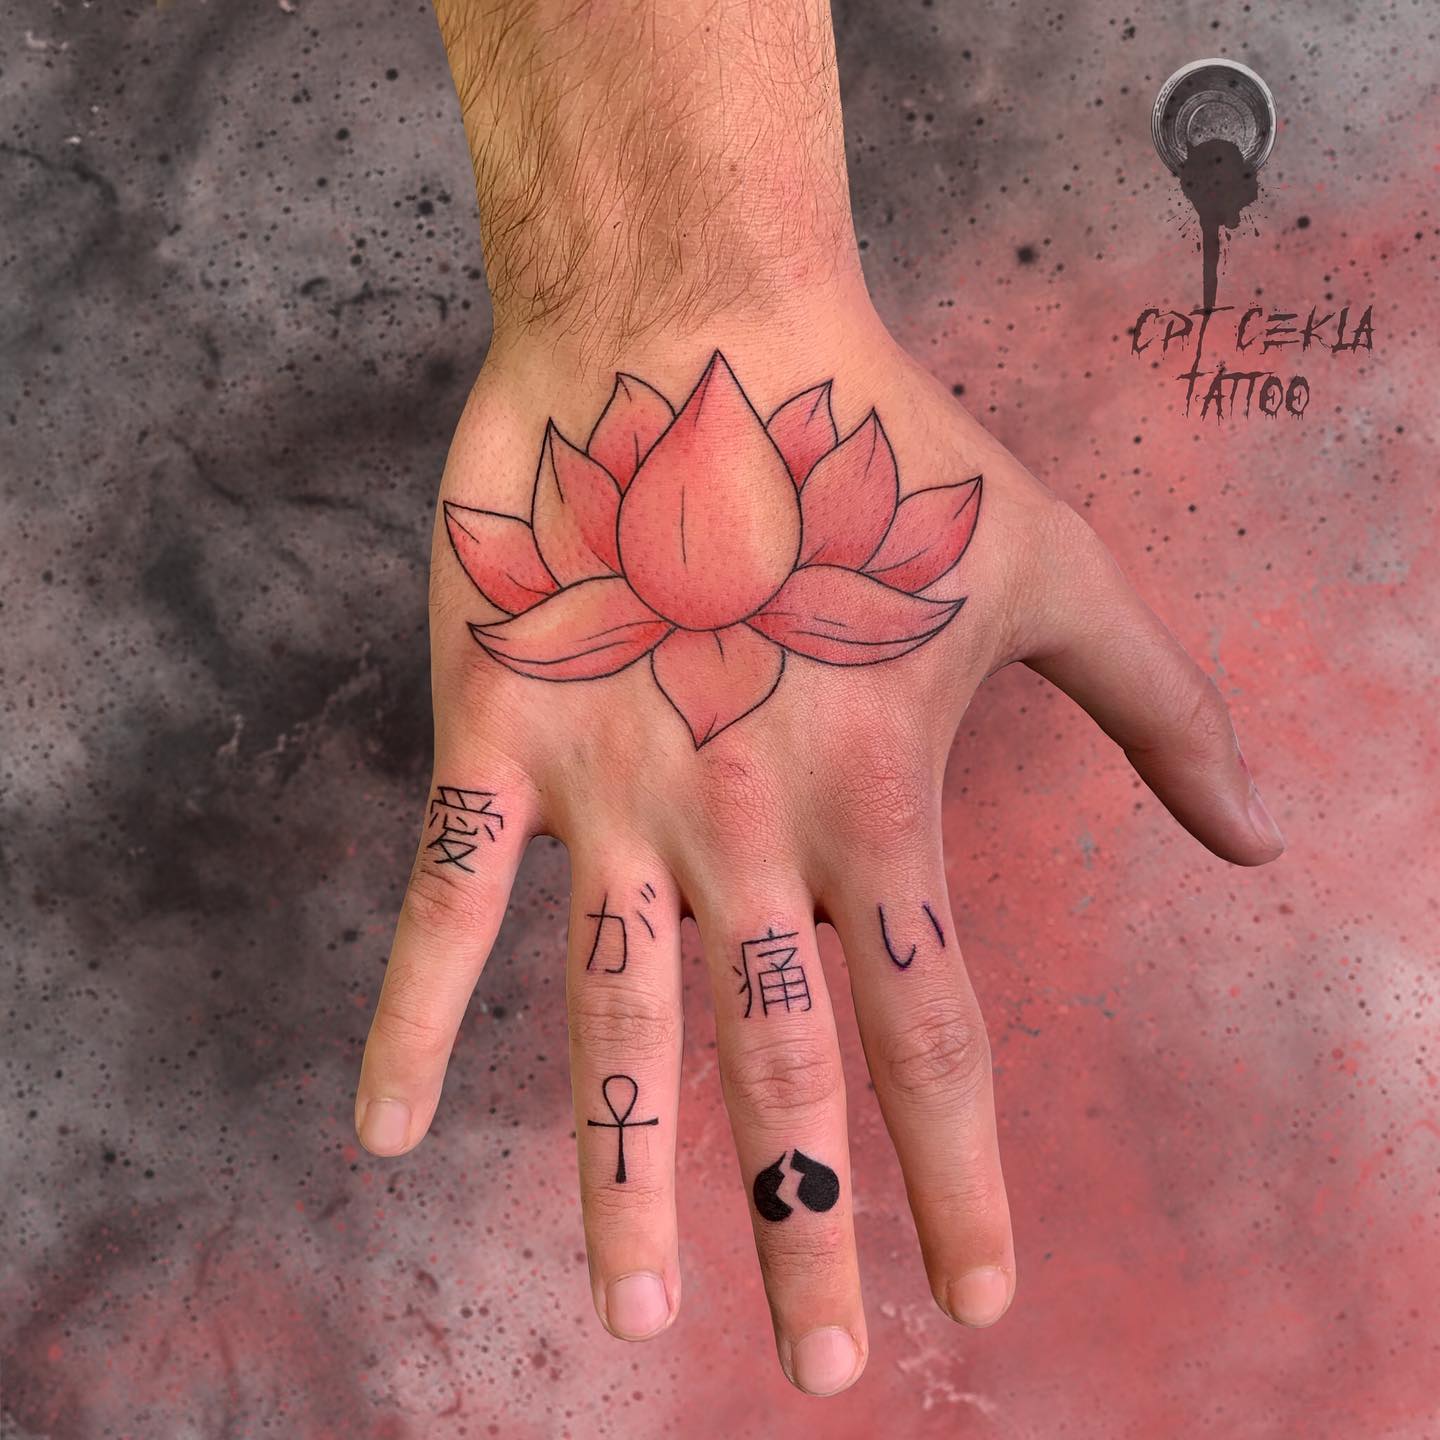 Carta china tatuada en el dedo